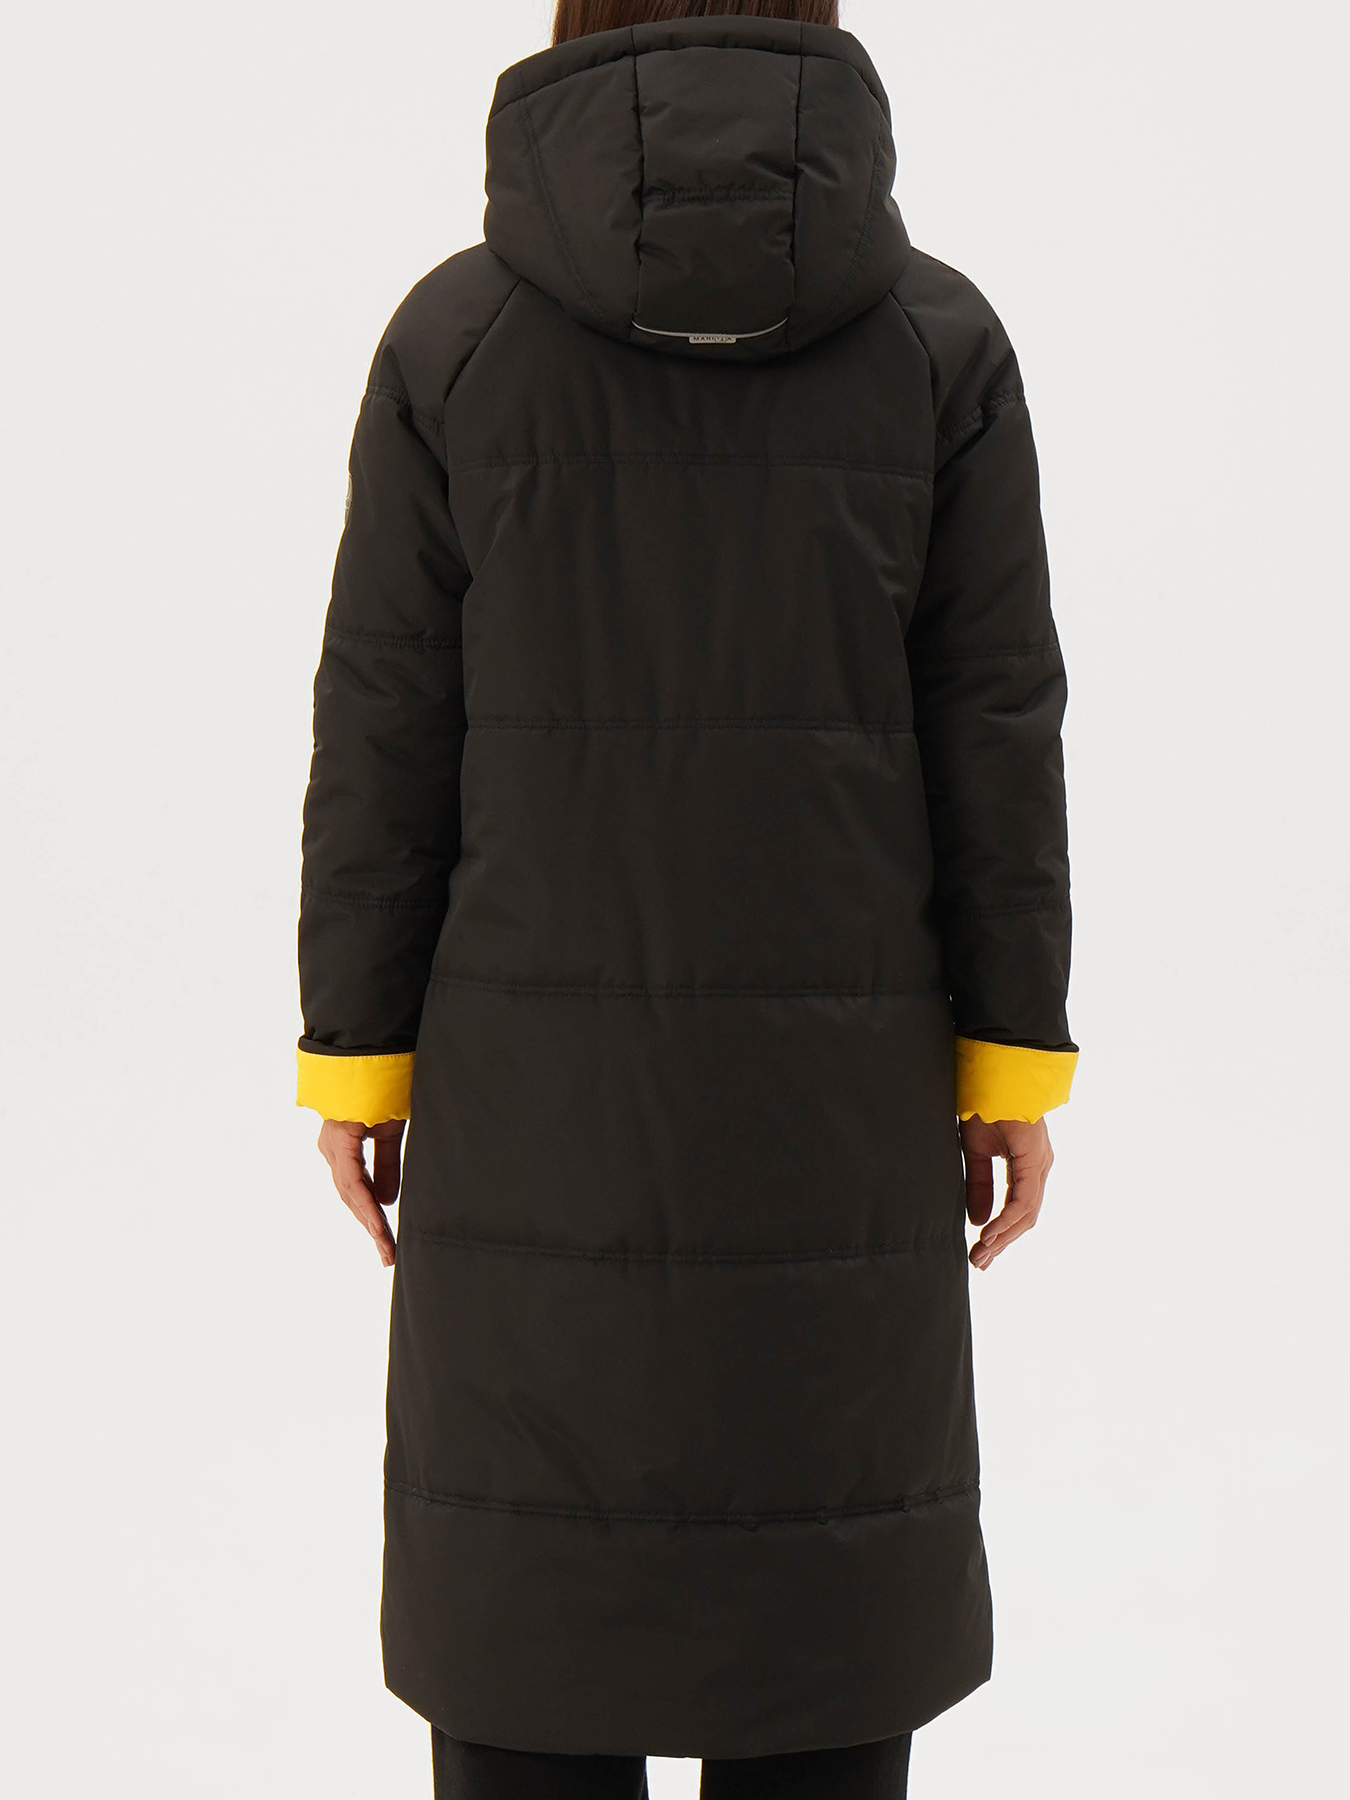 Пальто зимнее Maritta 433538-021, цвет черный, размер 46 - фото 2